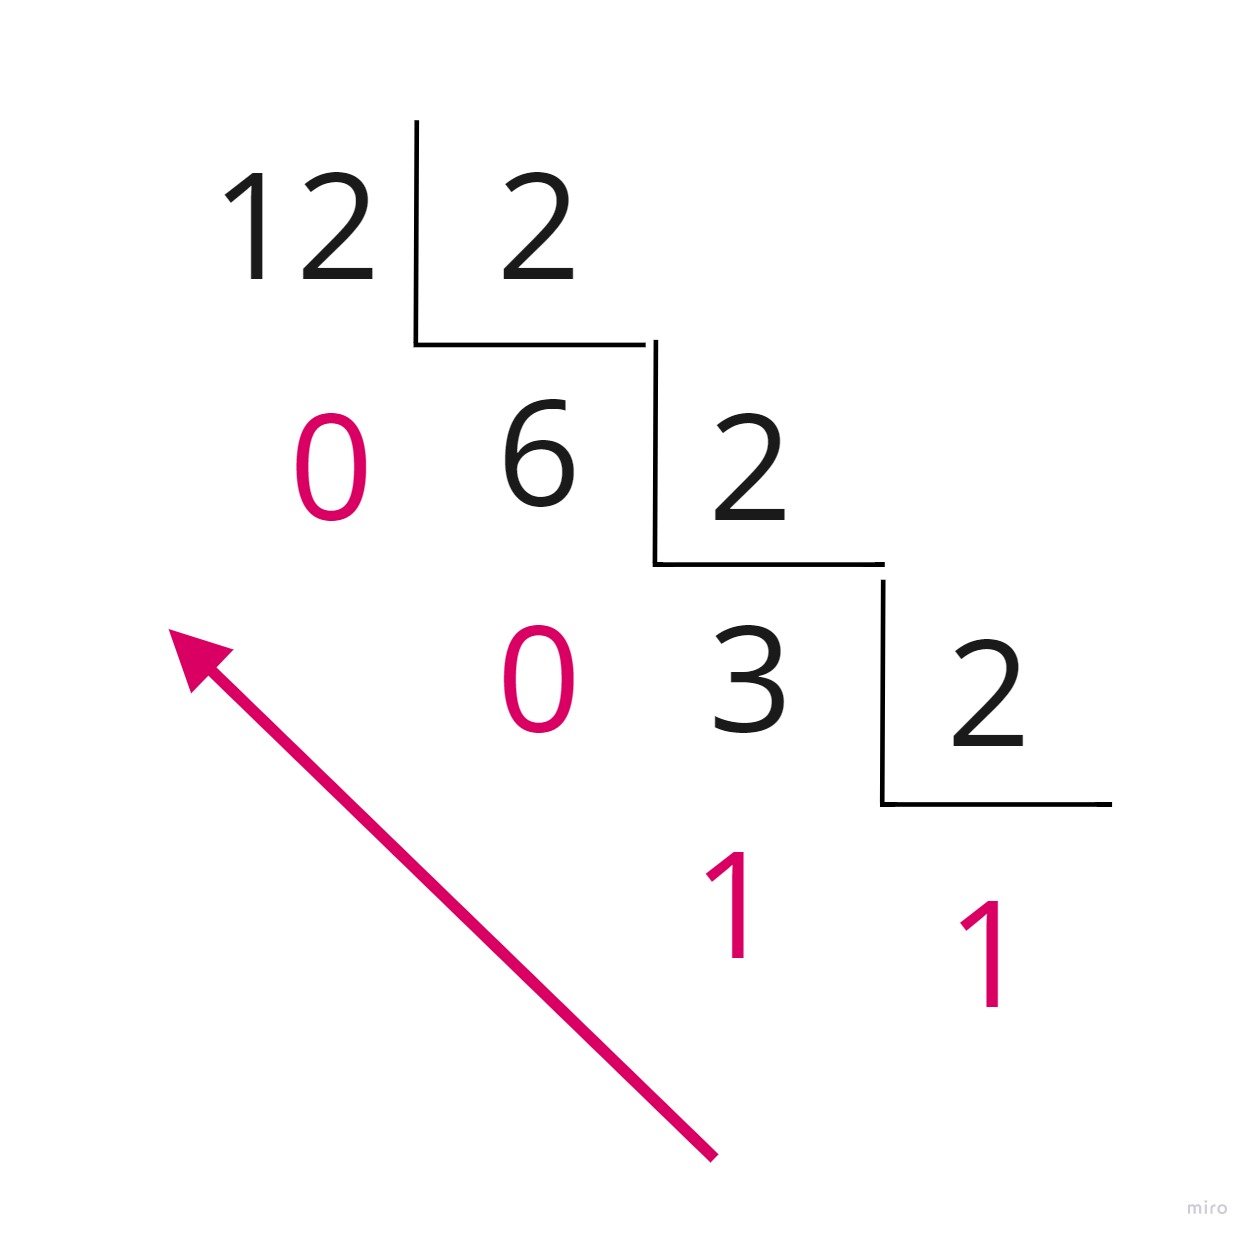 Imagem organizada em organograma cascata mostrando a conversão do decimal 12 em binário. Dividimos 12 por 2 até permanecer no número indivisível, o resto de todas as divisões é o número binário lido da esquerda para a direita. 12/2 = 6 , 6/2 = 3, 3/2 = 1 ; o resto da divisão é 0011, depois basta posicioná-los em 1100 que teremos o binário de 12.